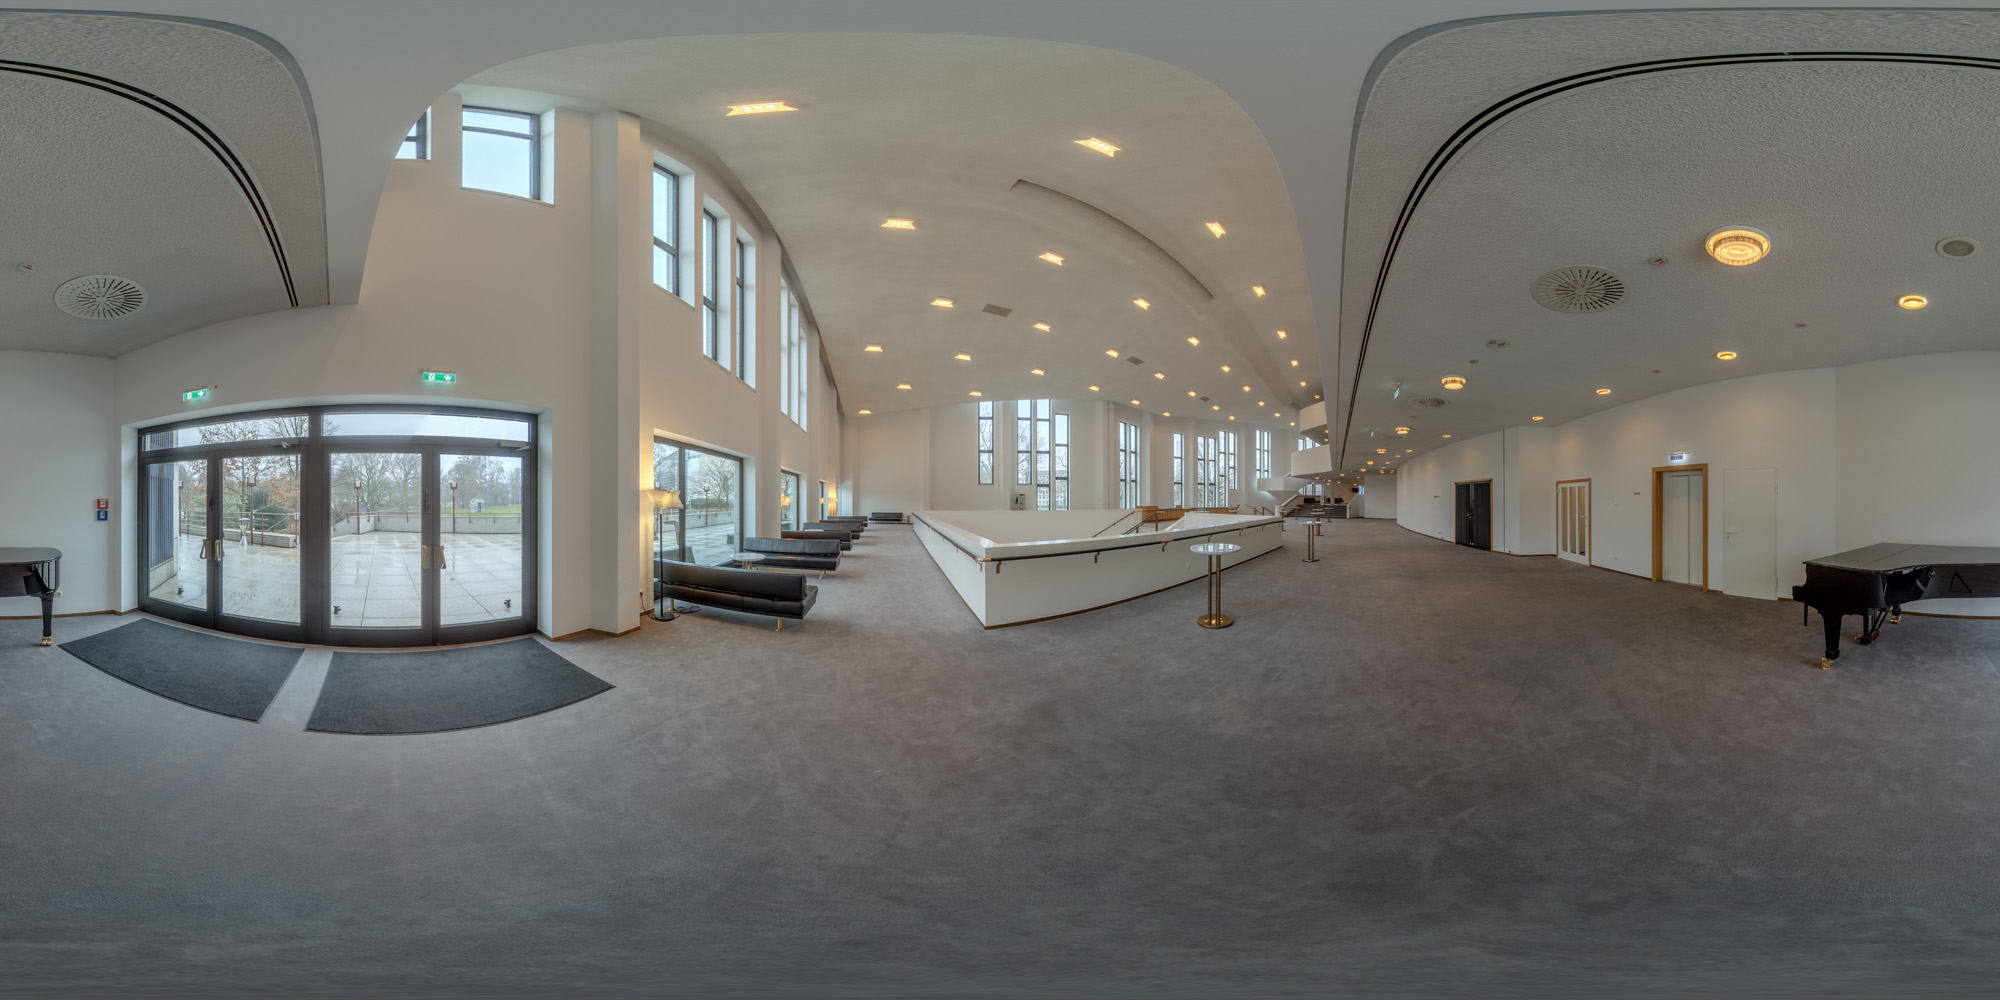 Aalto Theater Essen 360°